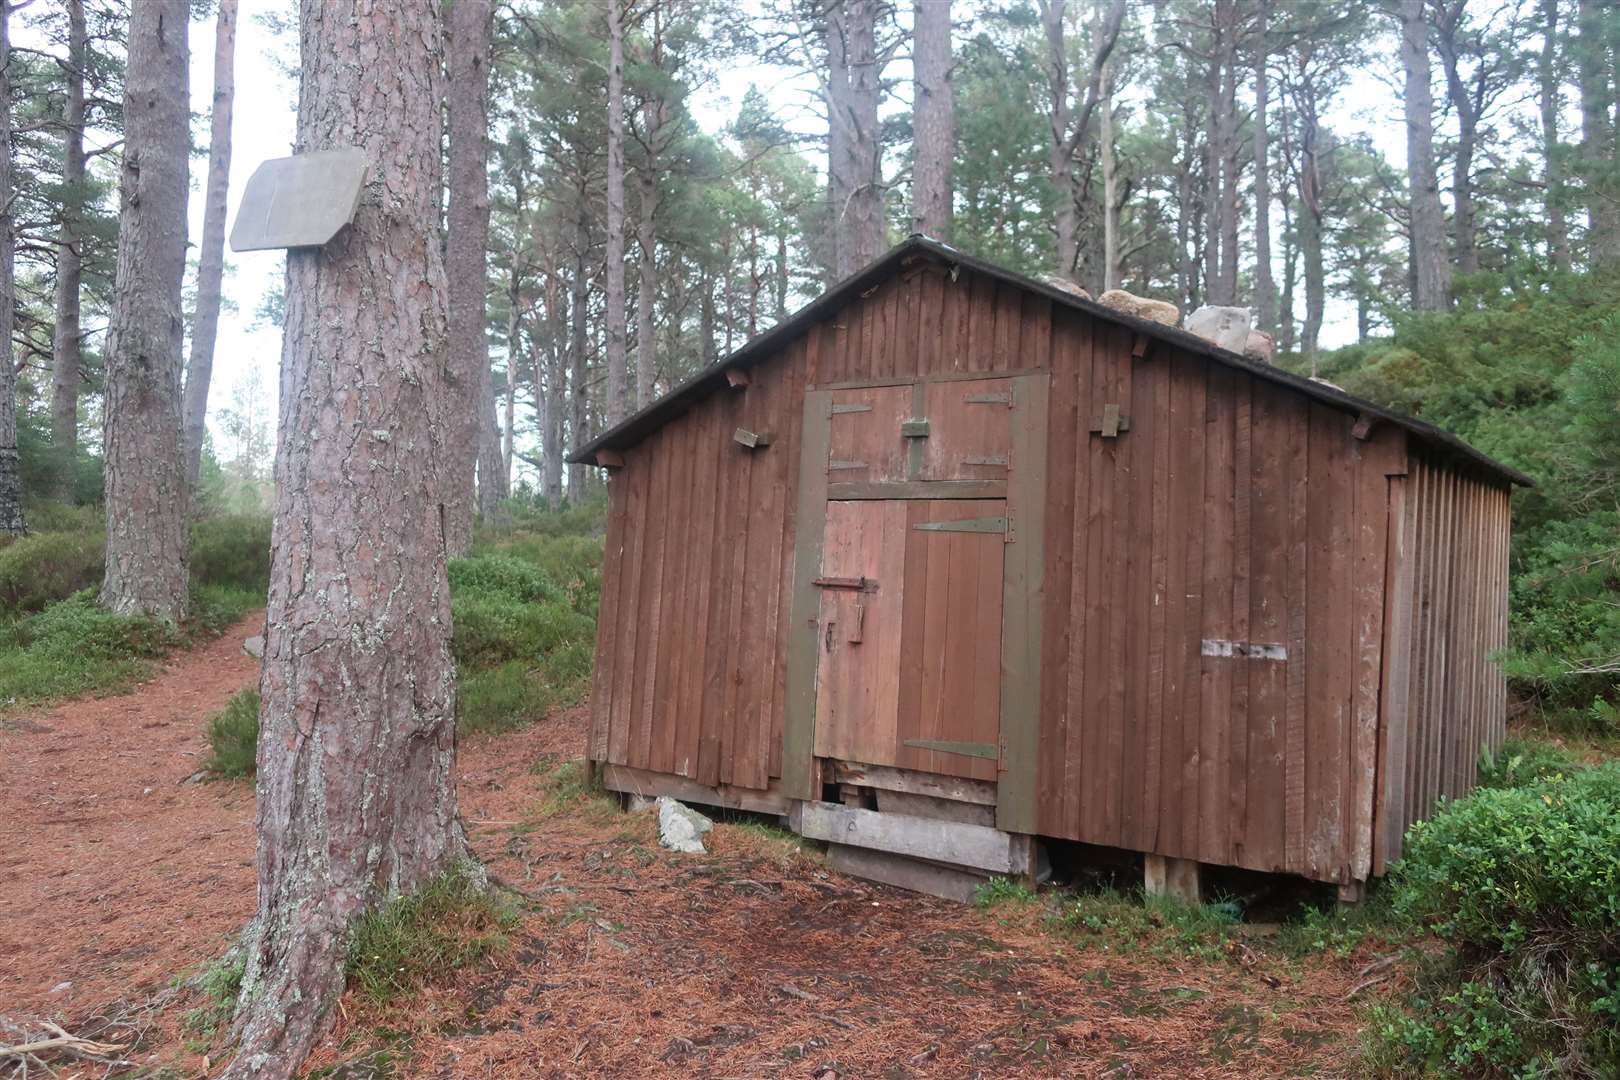 Utsi's Hut in the reindeer enclosure.